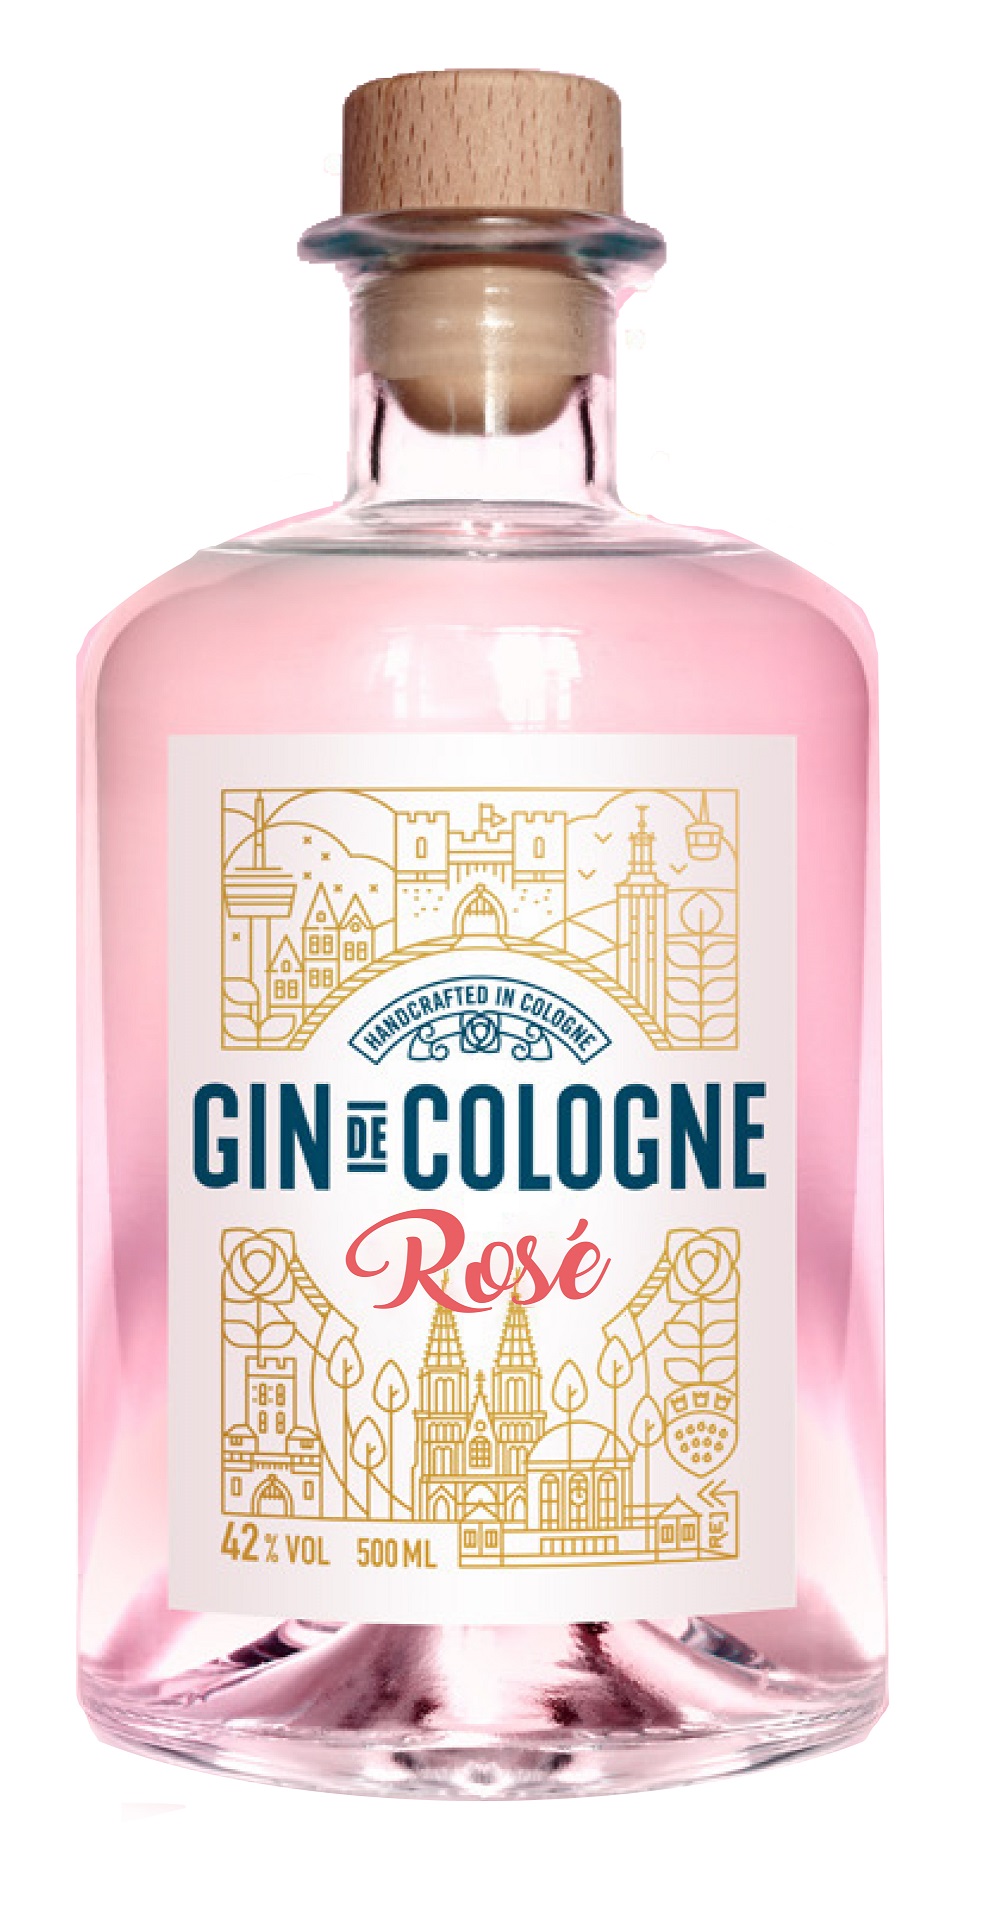 Gin de Cologne Rosé 0,5l 42%vol.